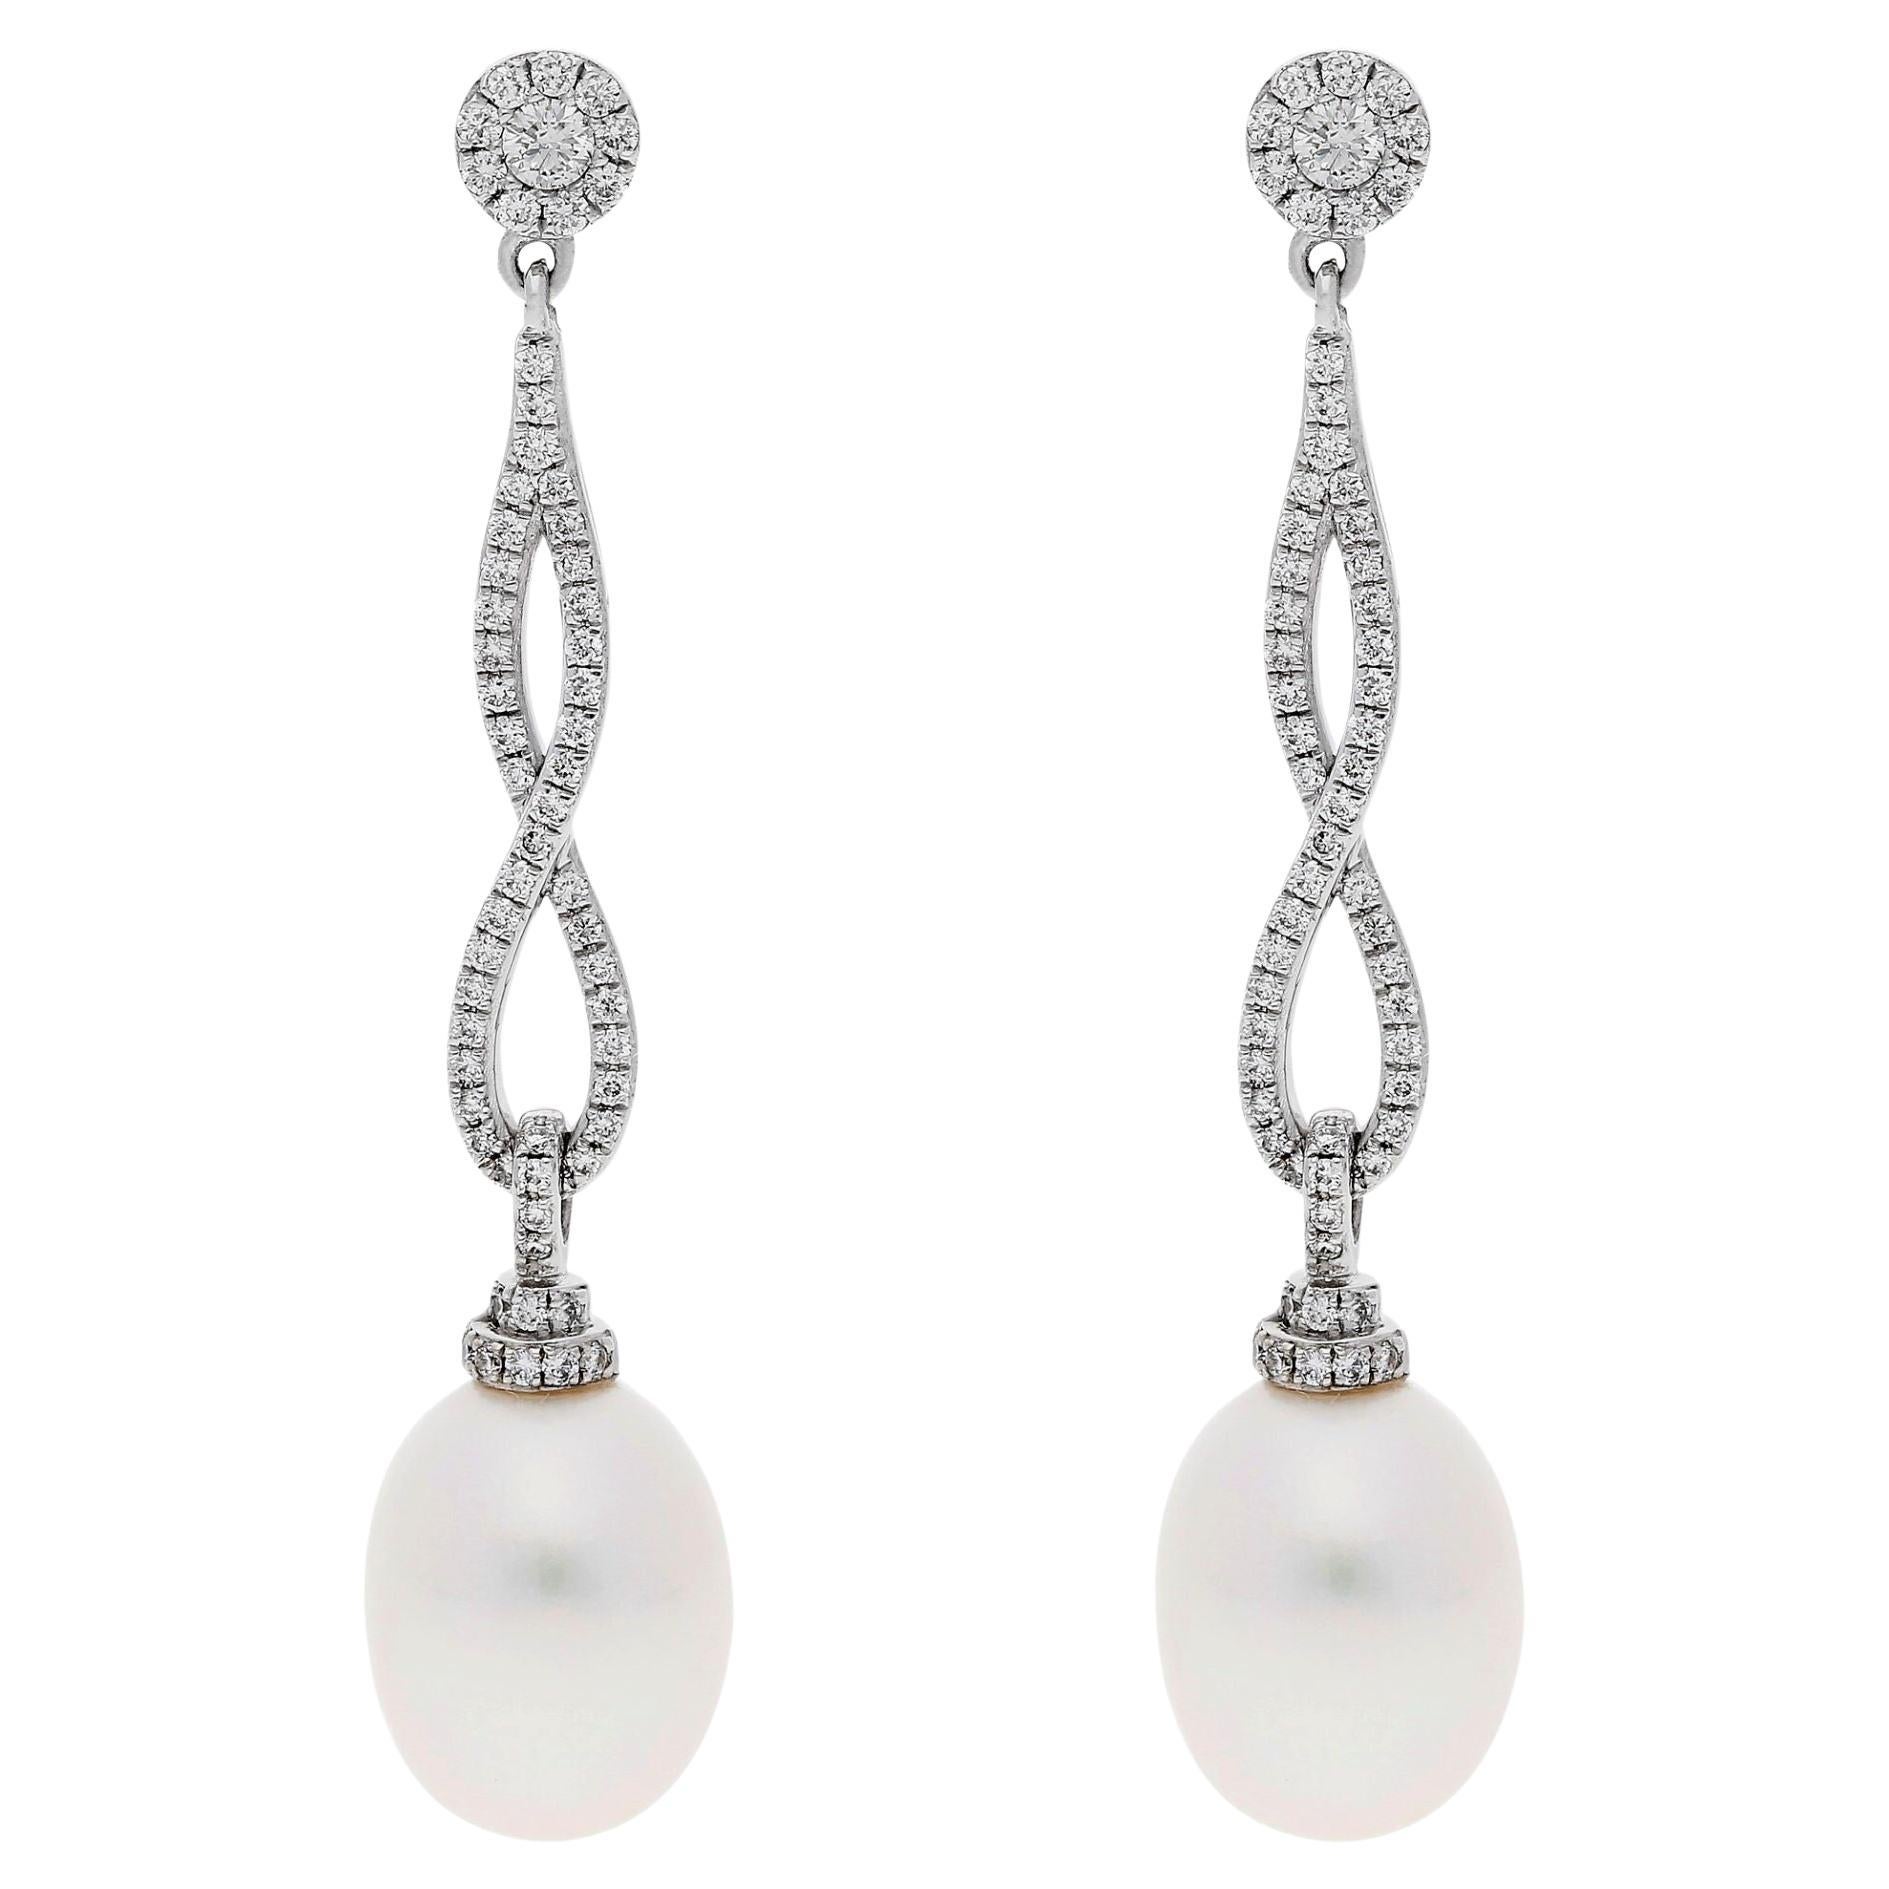 Boucles d'oreilles Infinity en or blanc 18ct avec perles et diamants